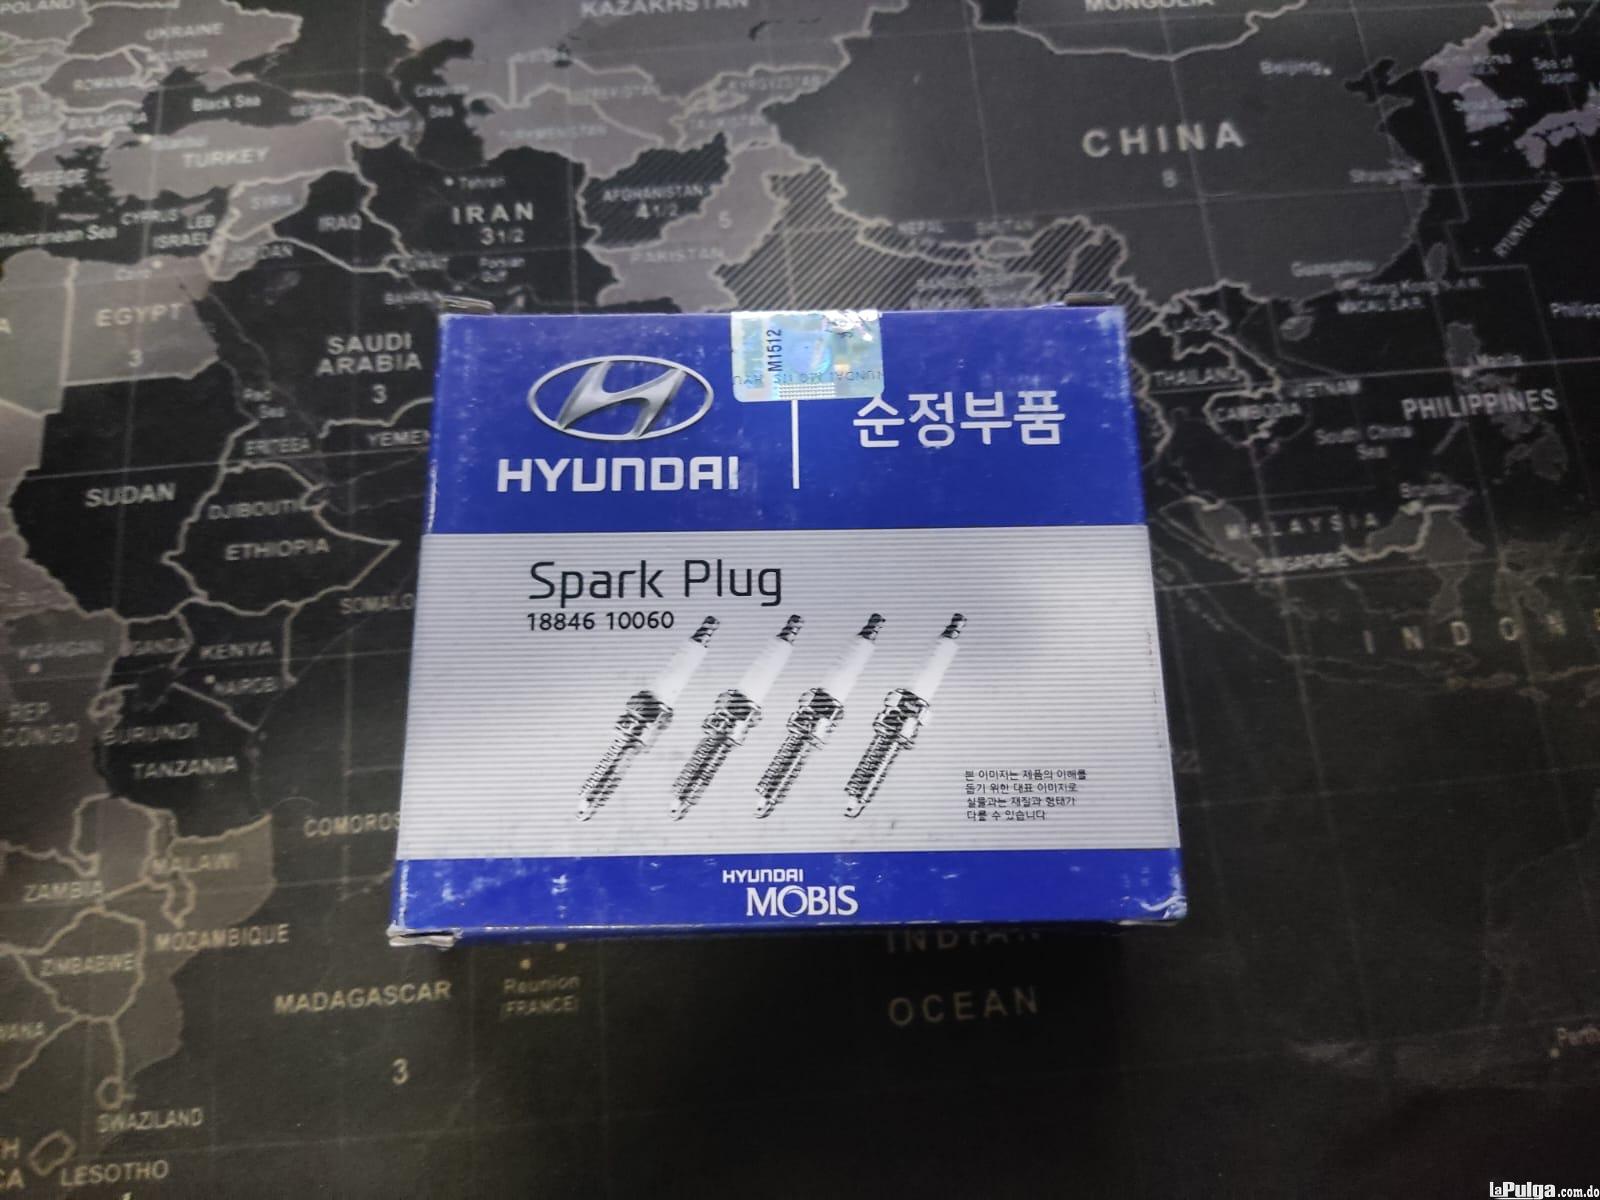 Bujias Hyundai Spark Plug 18846 10060 Foto 7157395-2.jpg